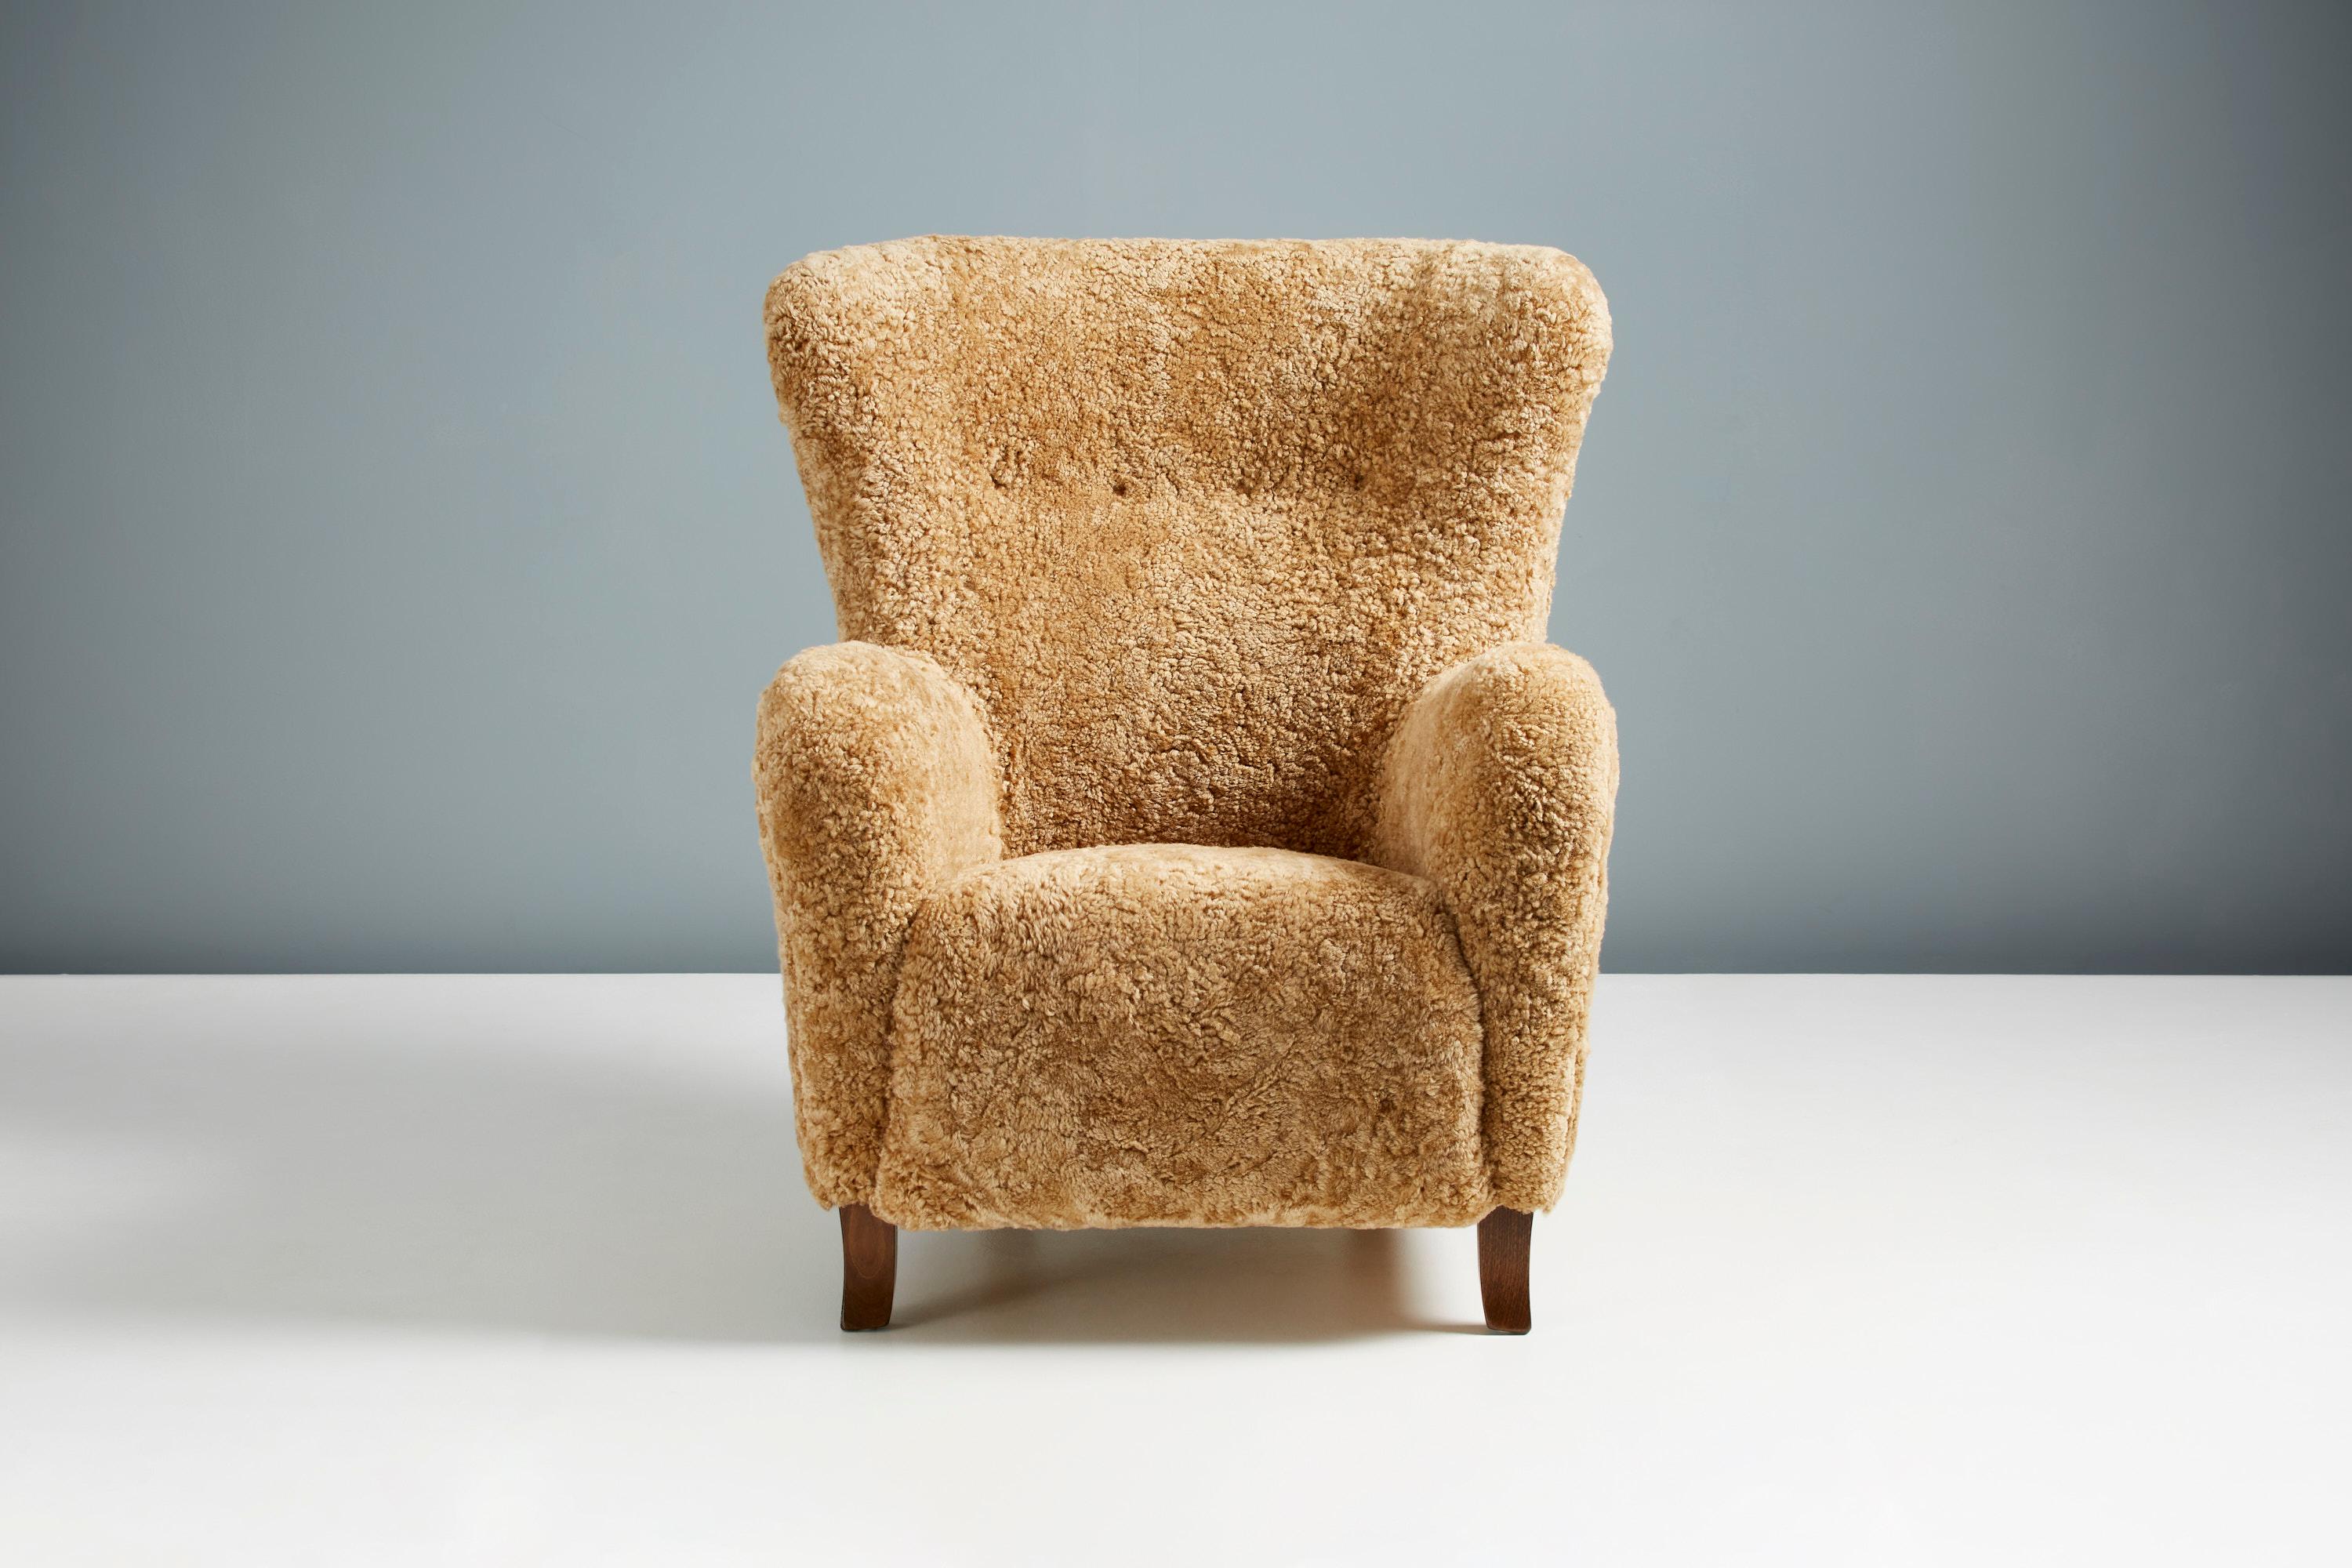 Chaise à oreilles Sampo de Dagmar Design/One

Un fauteuil à oreilles sur mesure développé et produit dans nos ateliers de Londres à l'aide de matériaux de la plus haute qualité. Le cadre est fabriqué en bois de hêtre massif et l'assise est